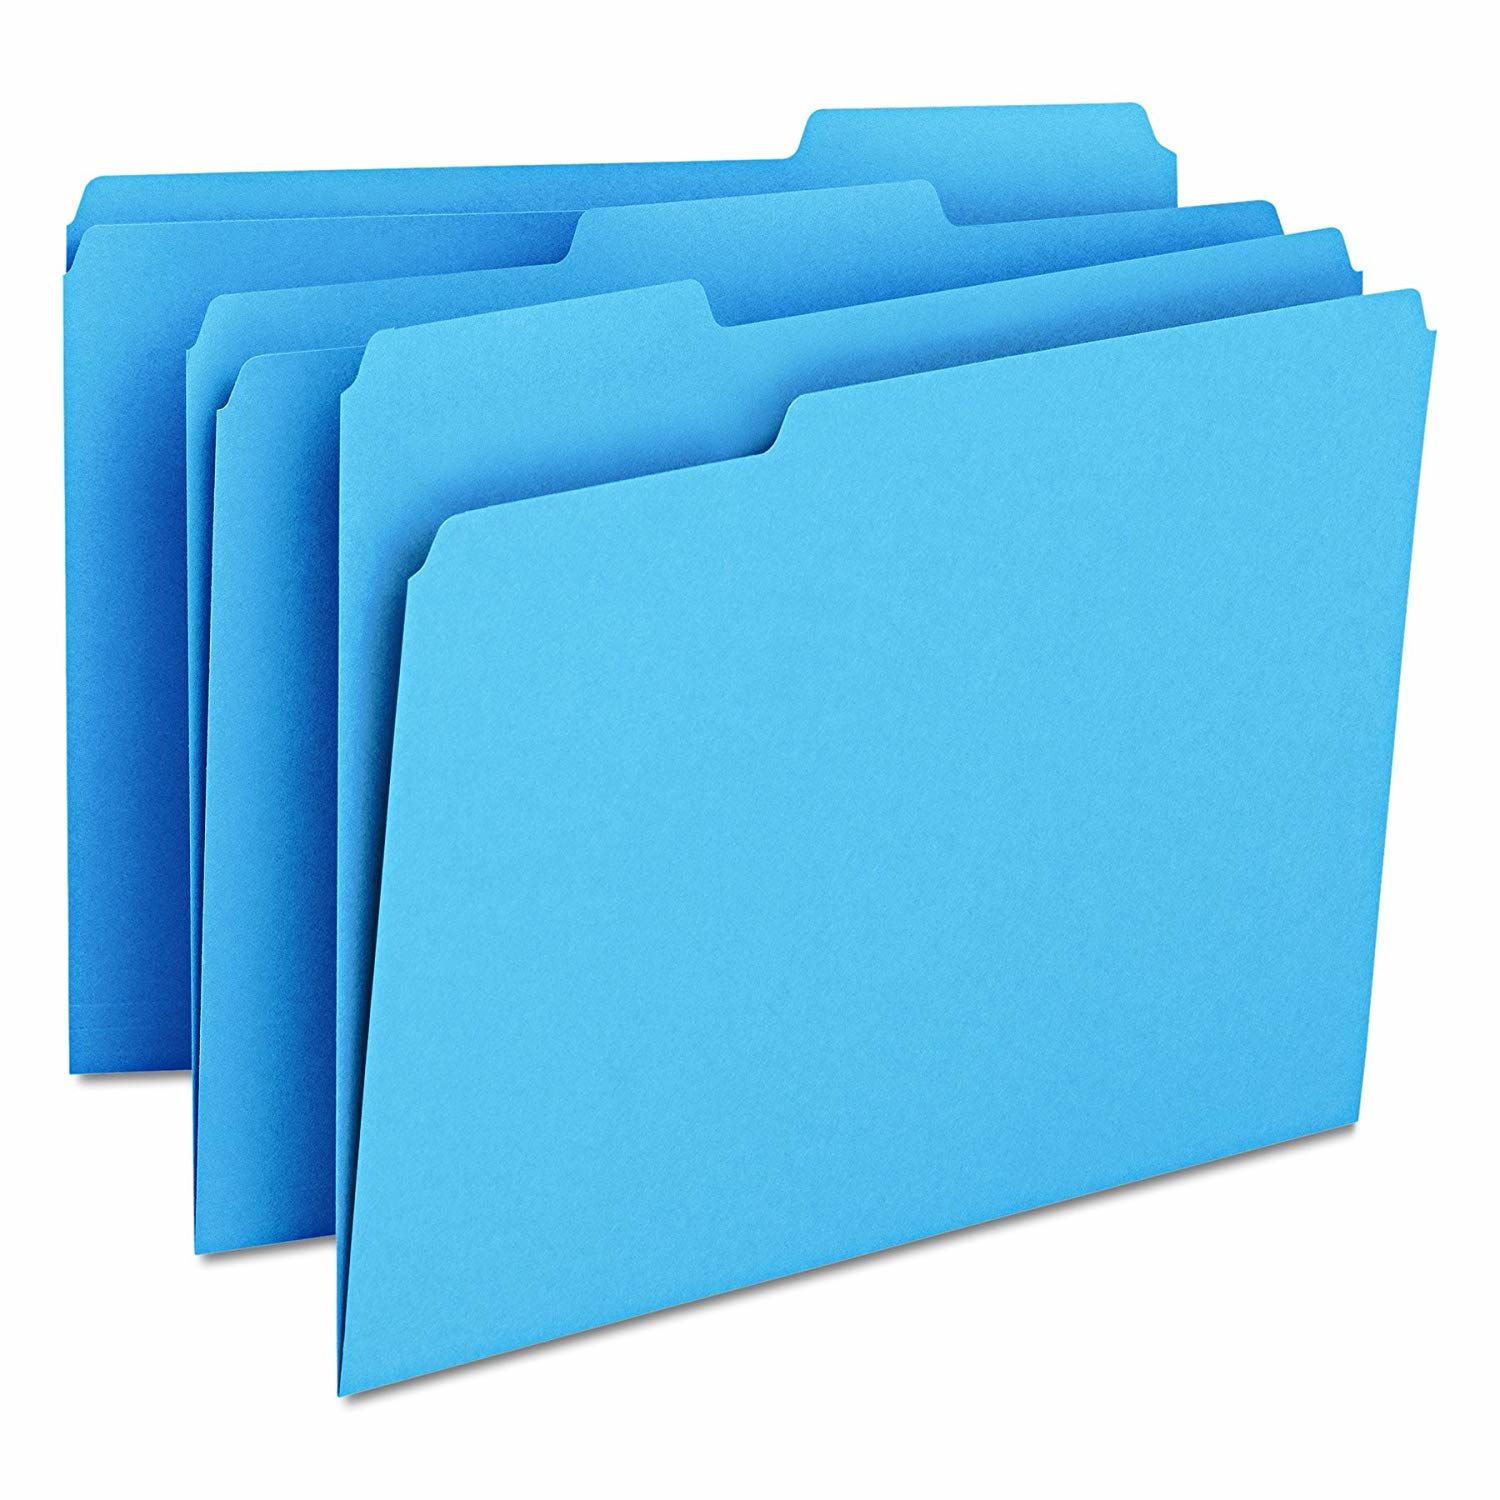 Manila (American) folder A4 blue